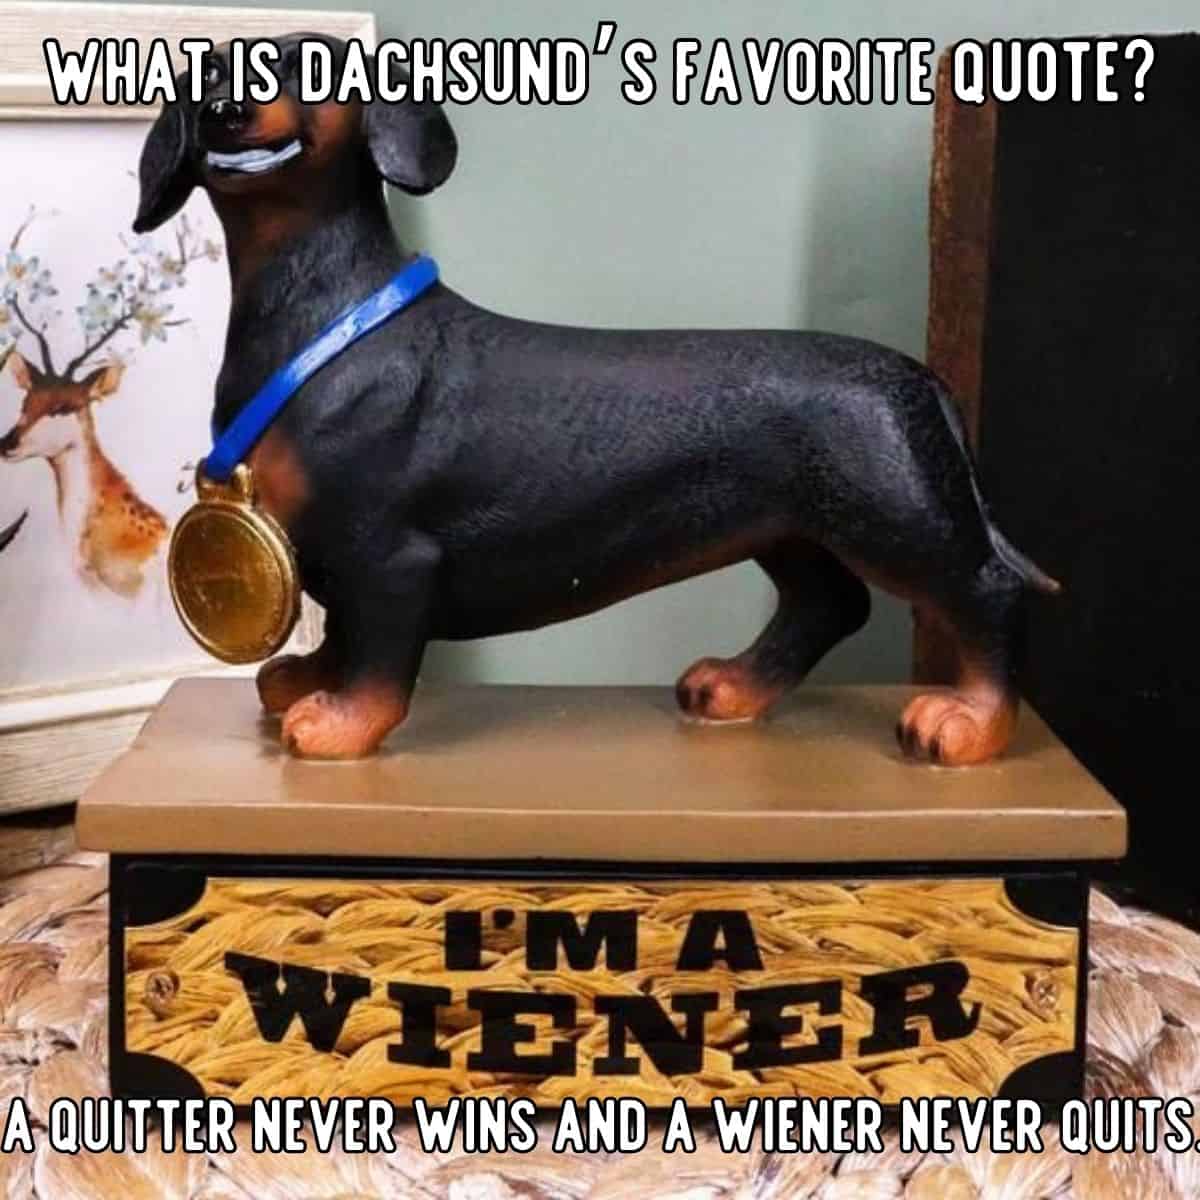 dachshund’s favorite quote joke